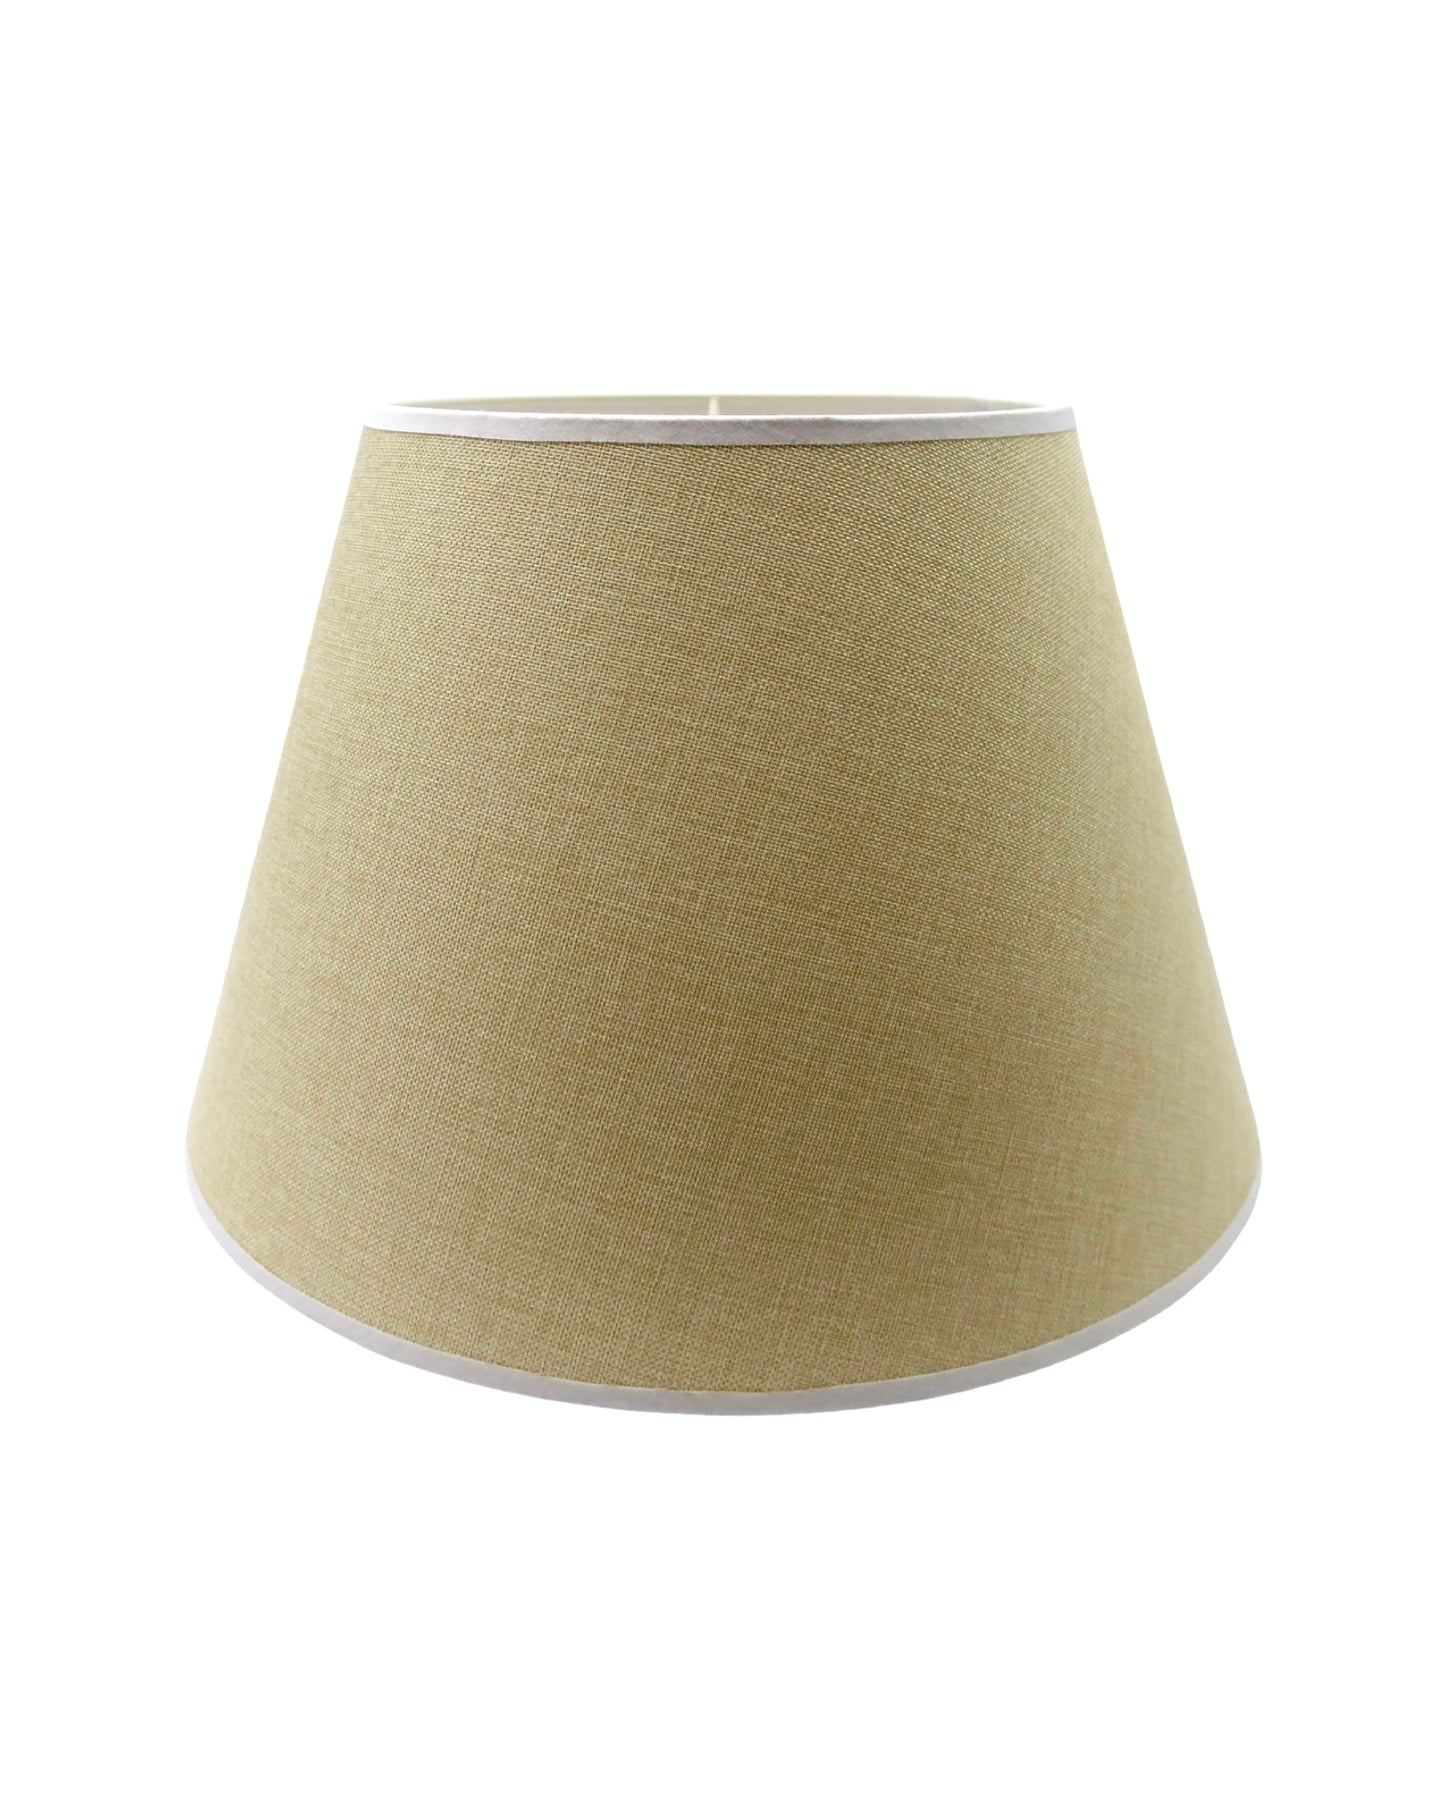 XL Woven Linen Lamp Shade